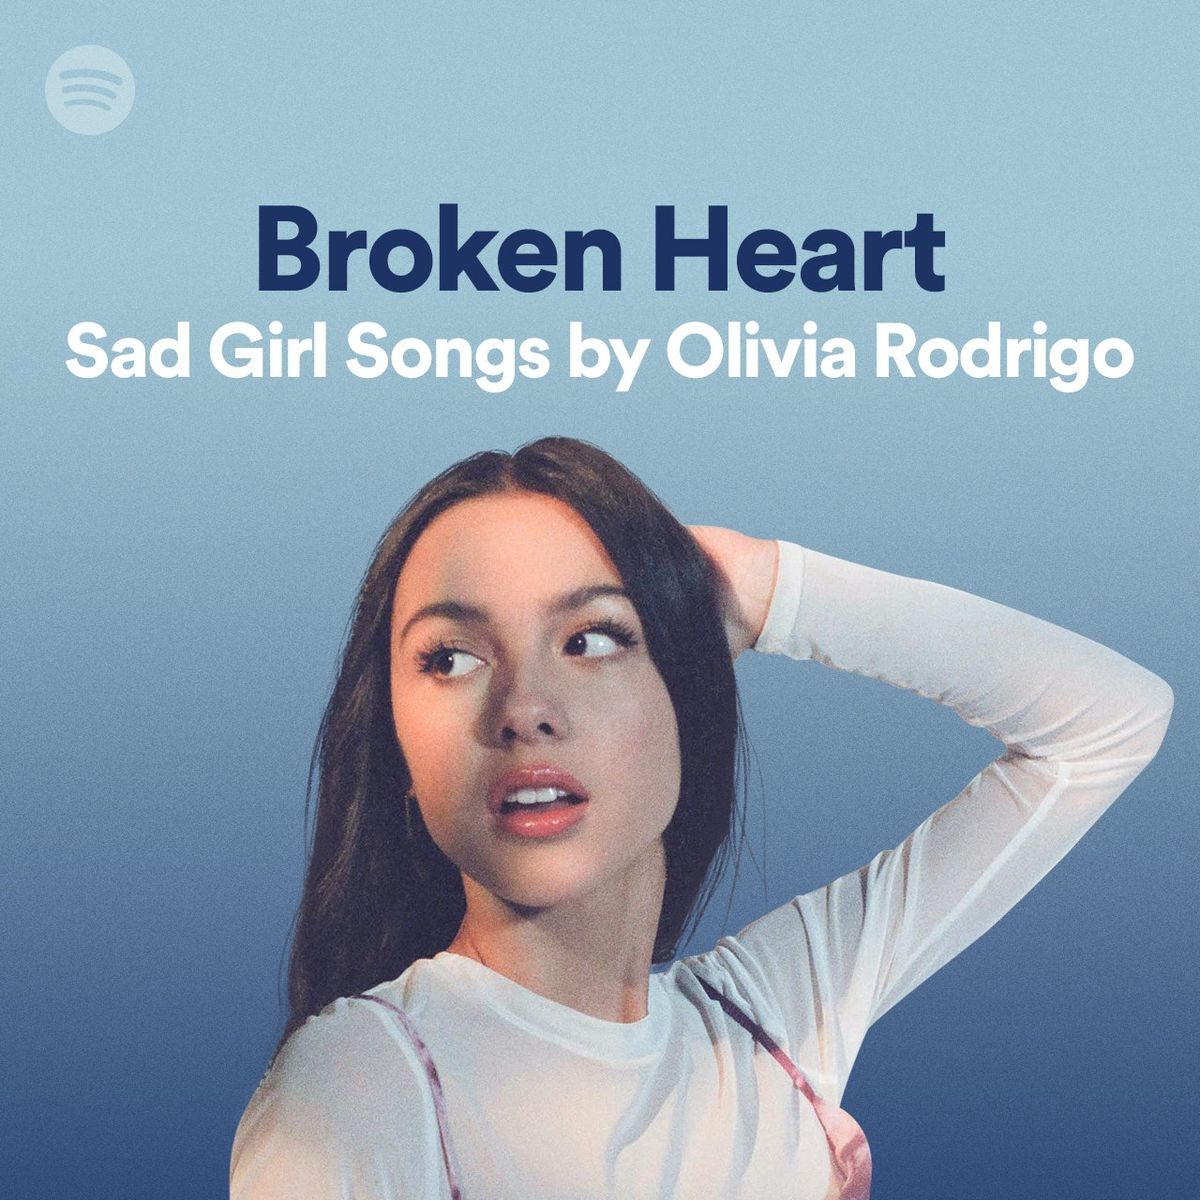 Olivia Rodrigo pripremila je popis pjesama 'Sad Girl Songs' za sve da plaču